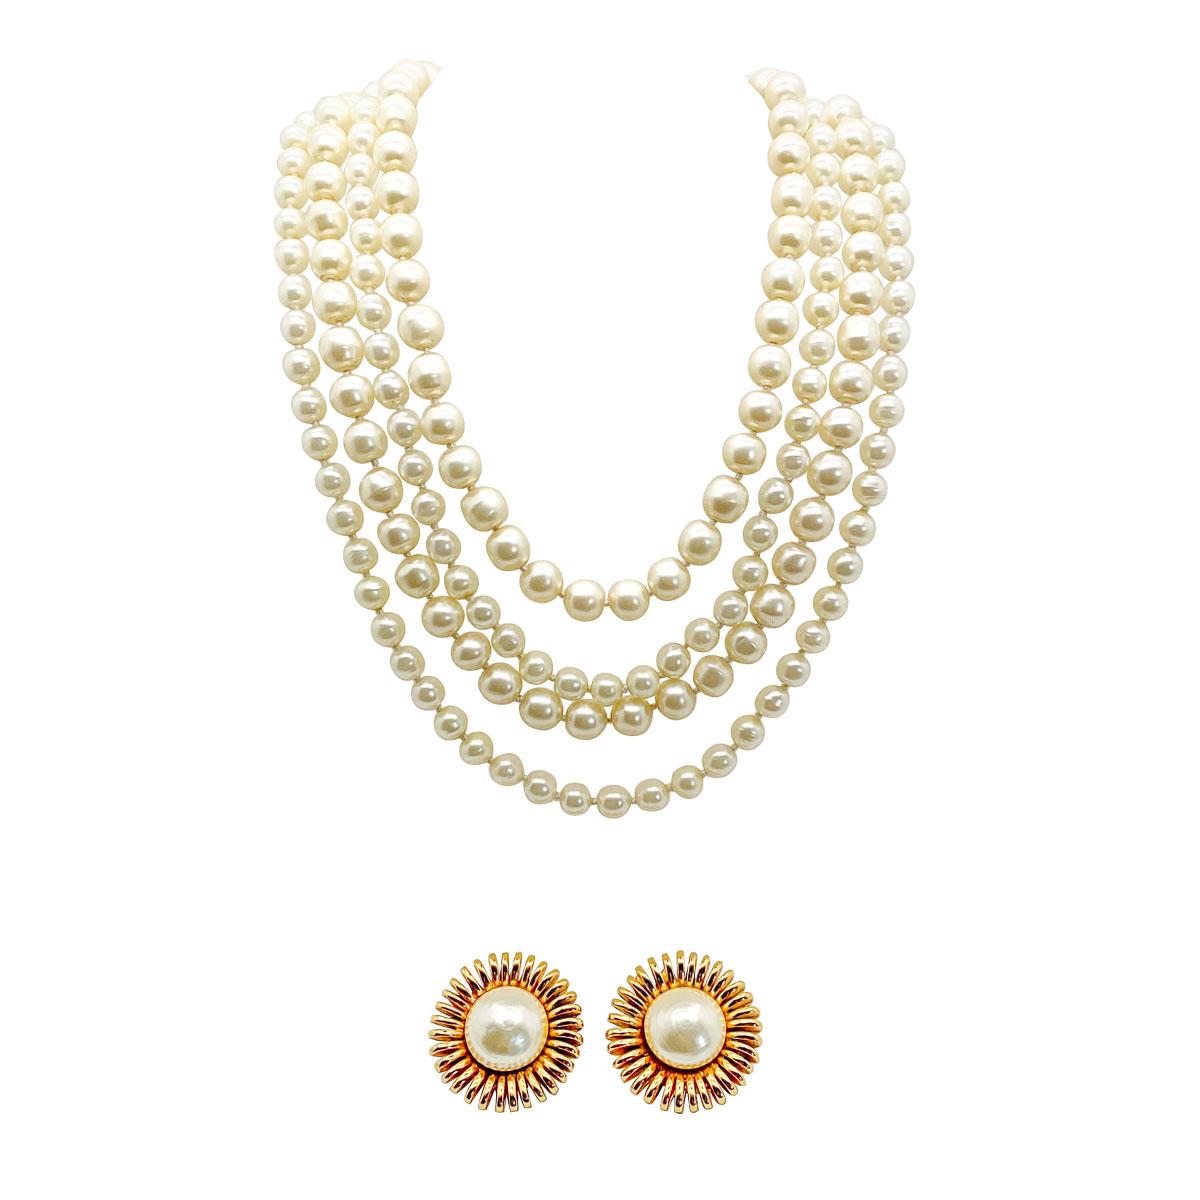 Ein wichtiges und sehr begehrtes Vintage Chanel Perlenkette und Ohrring Suite. Sie wird dem Maison Gripoix für das Haus Chanel und dem ersten Jahr des inzwischen legendären Karl Lagerfeld im Haus zugeschrieben.
Angefangen bei der beeindruckenden